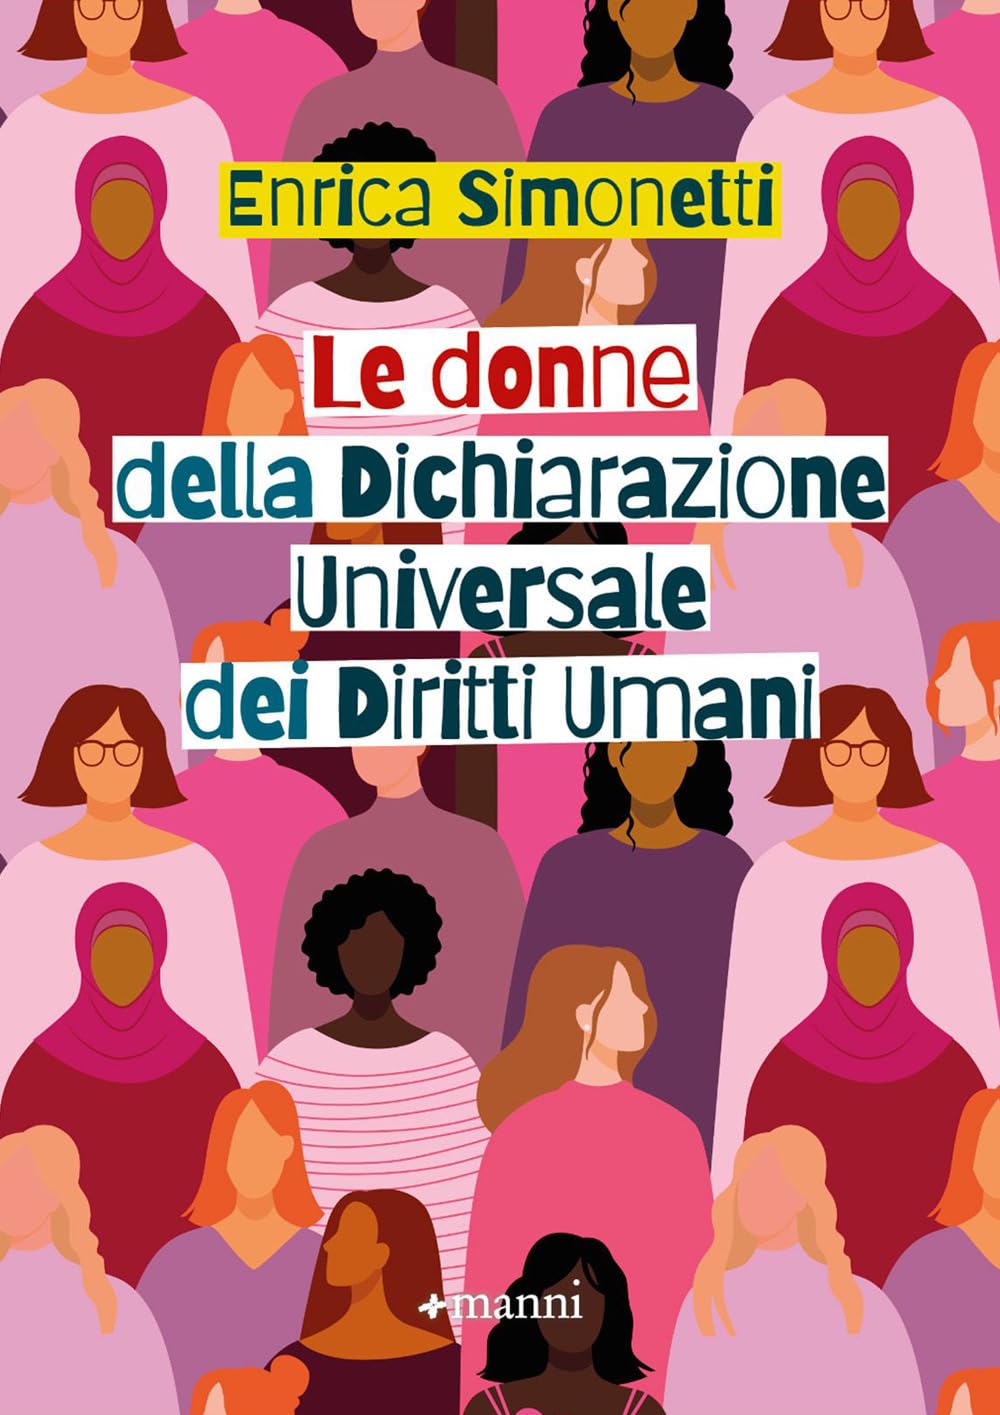 Enrica Simonetti – Le donne della Dichiarazione Universale dei Diritti Umani